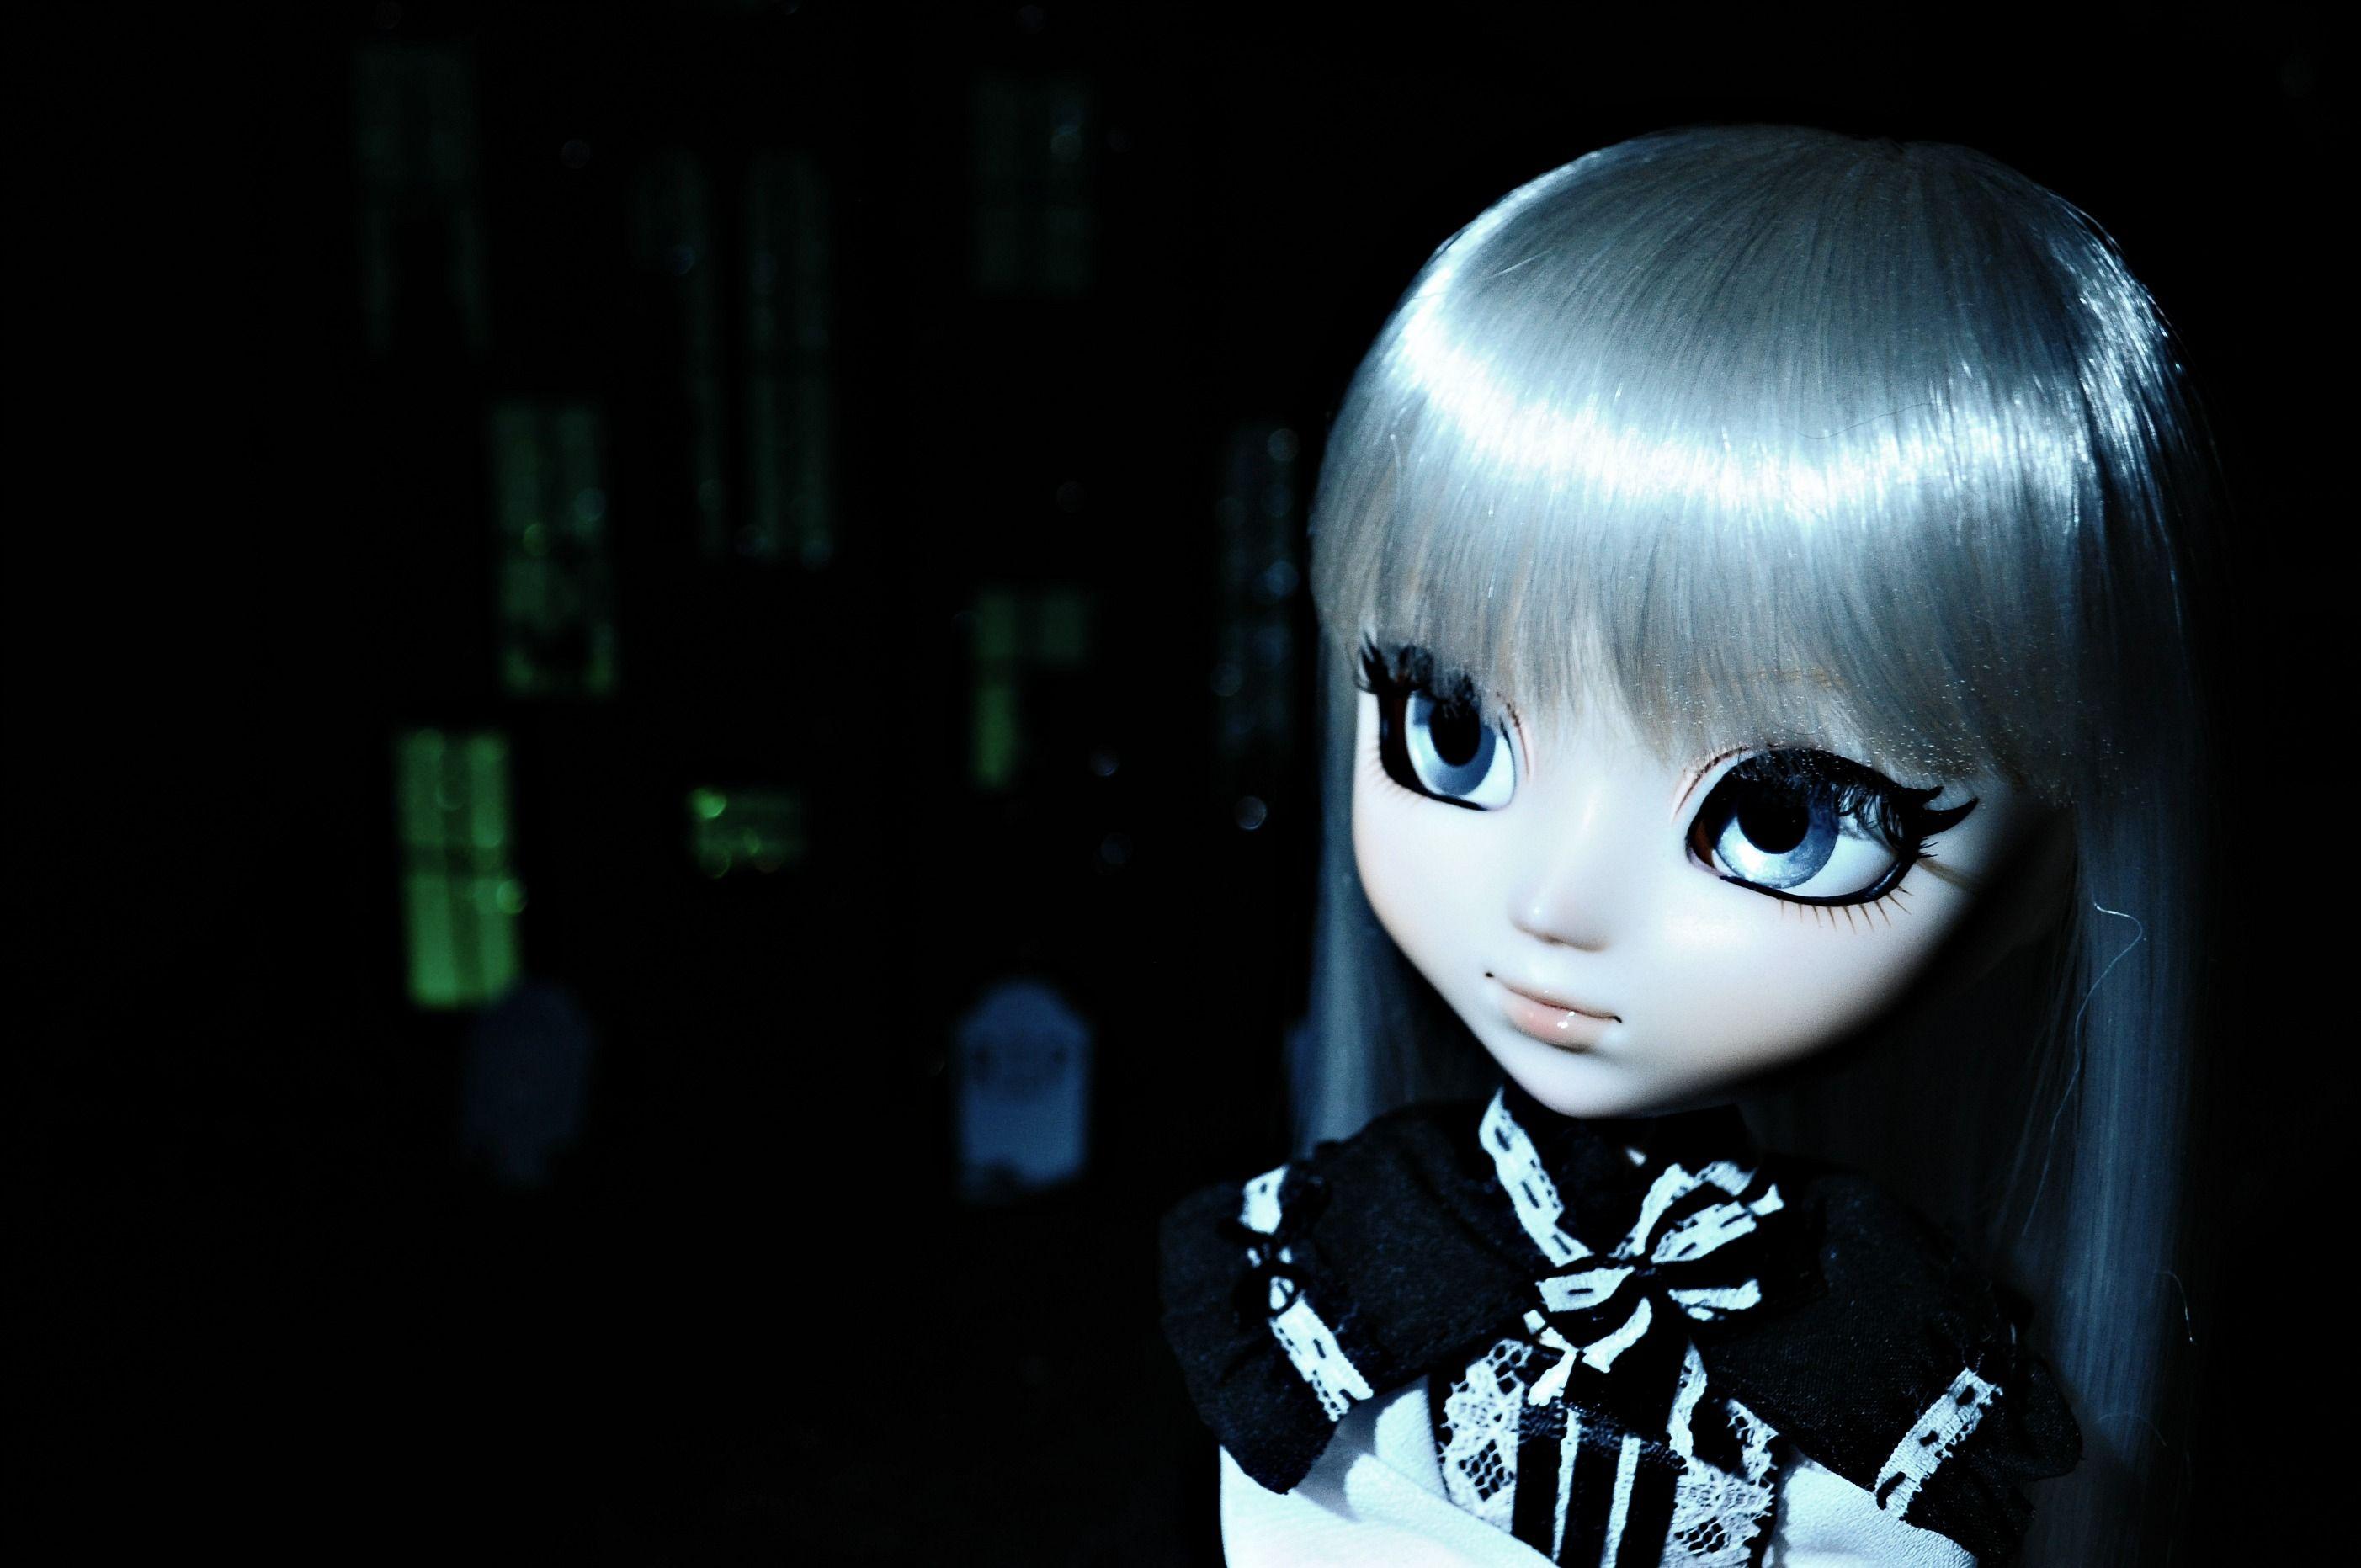 HOUSE ON HAUNTED HILL dark horror doll toy gothic loli goth